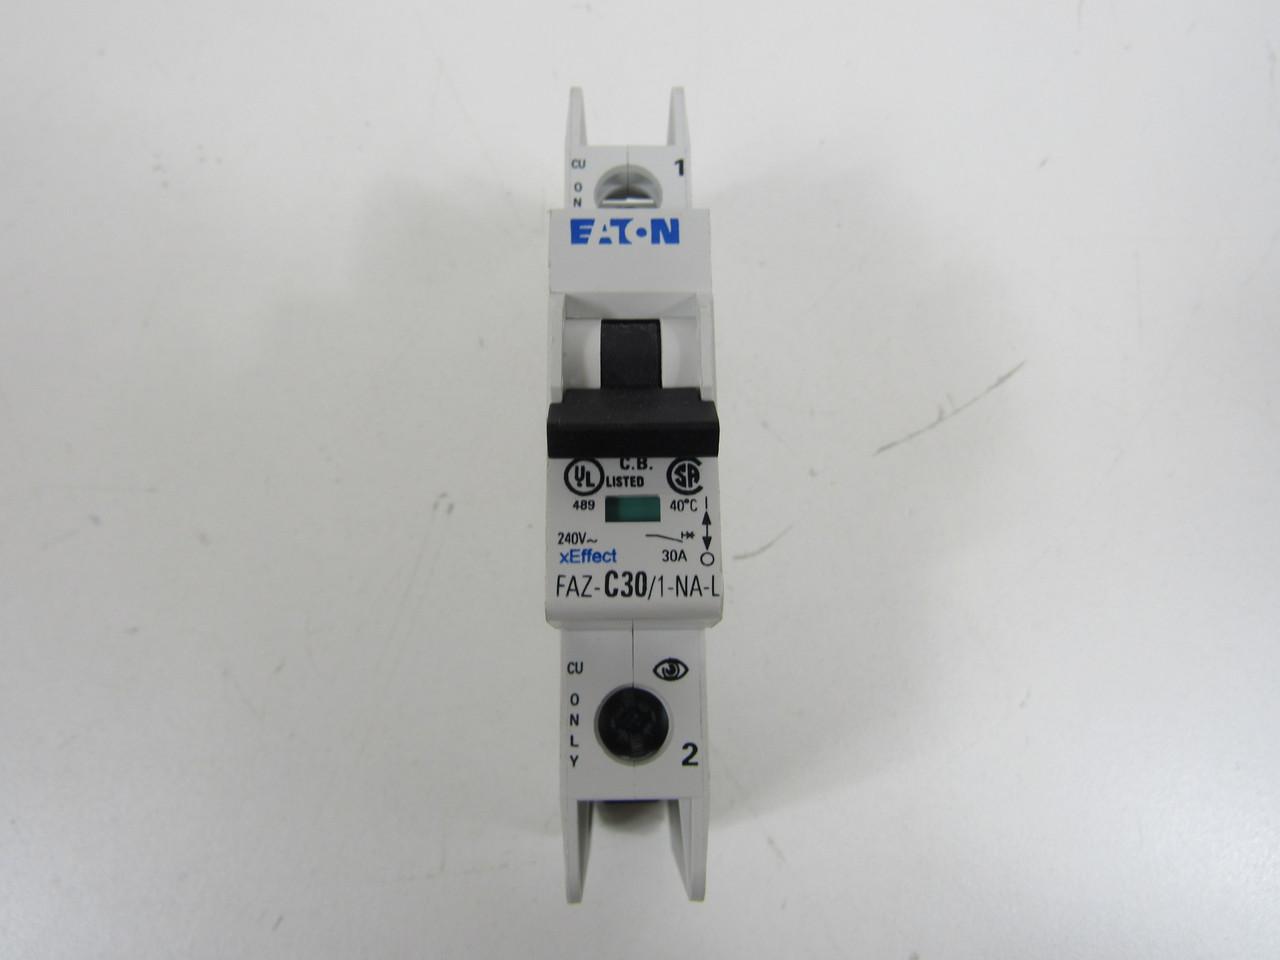 Eaton FAZ-C30/1-NA-L Miniature circuir breaker, 1 pole, 30 A, C trip curve, 240 VAC, screw terminals, UL489